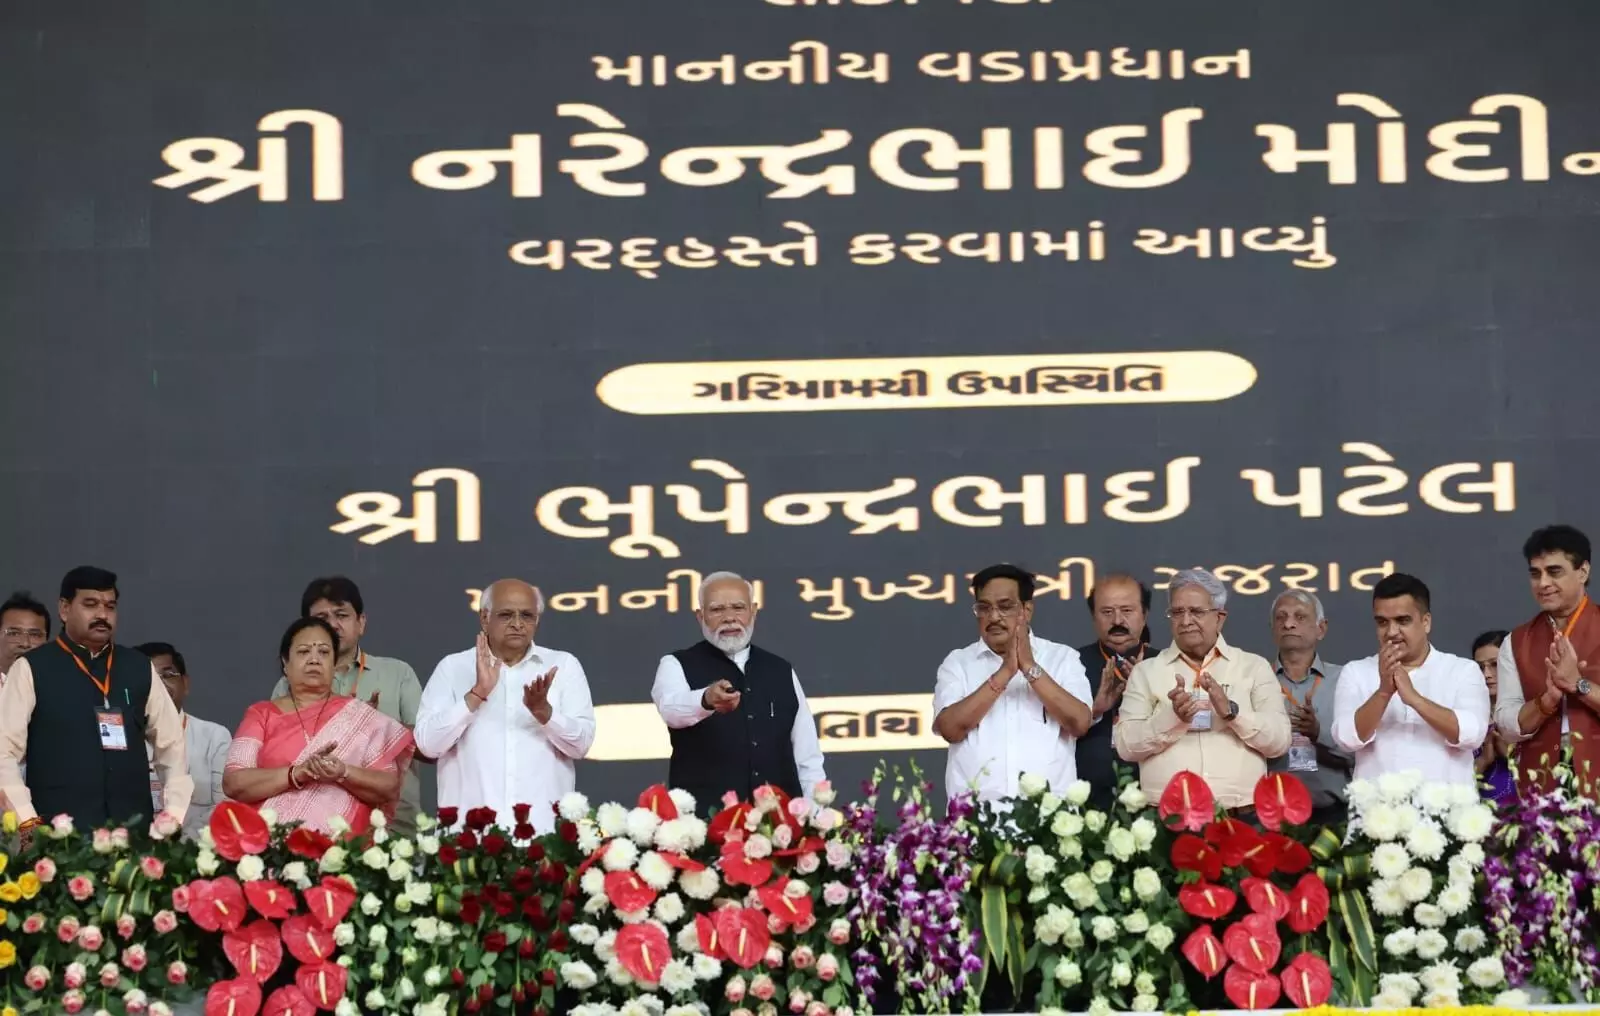 દક્ષિણ ગુજરાતમાં PM મોદીએ 44 હજાર કરોડથી વધુના વિકાસકાર્યોનું લોકાર્પણ અને ખાતમુહૂર્ત કર્યું